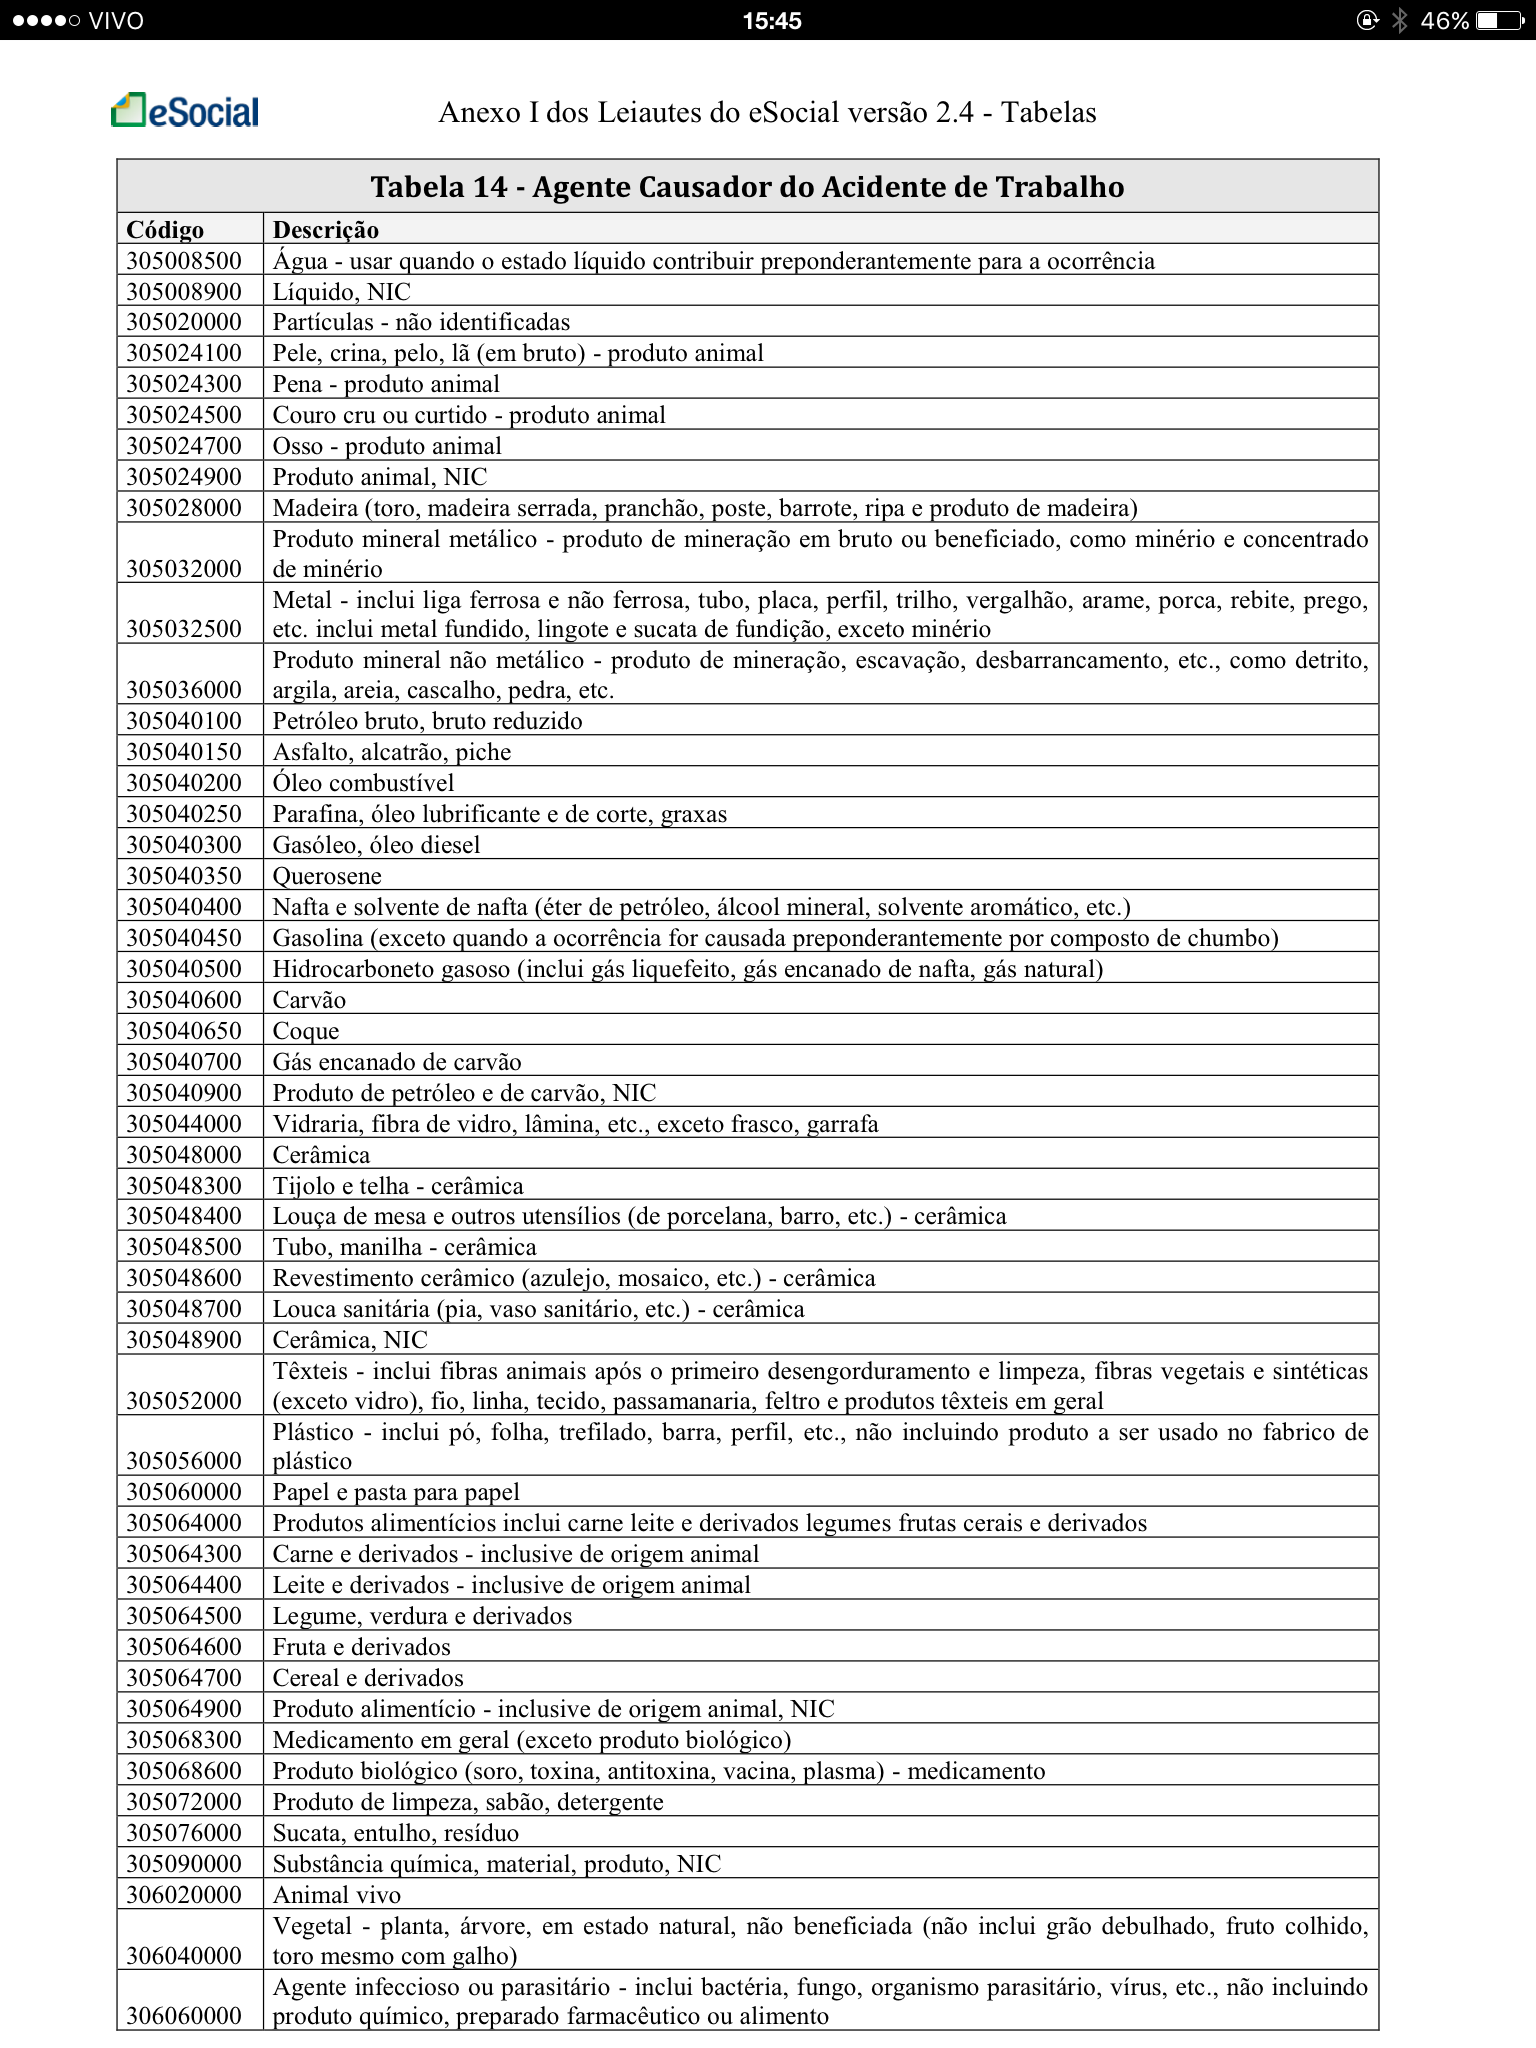 Tabela 14 Agente Causador do Acidente de Trabalho 4